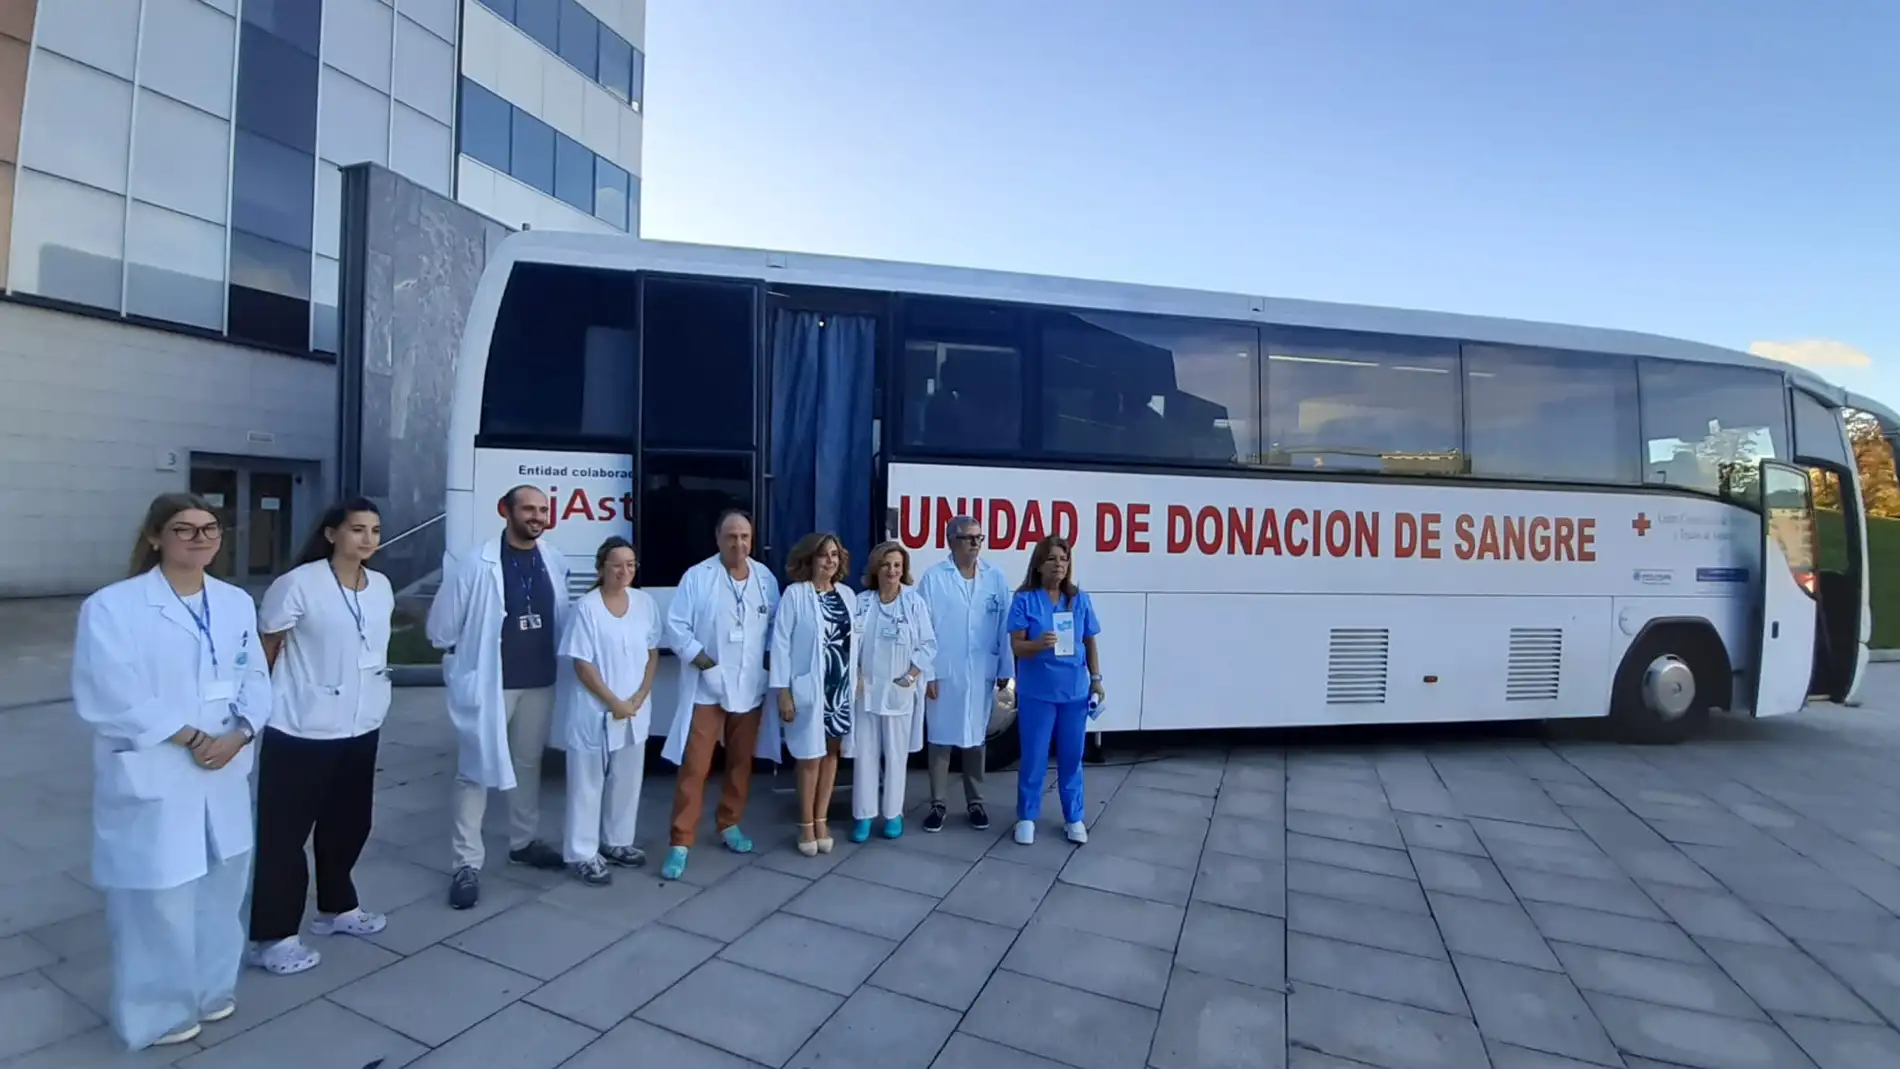 Asturias registró 85 trasplantes de médula ósea en 2022, por encima de la media nacional